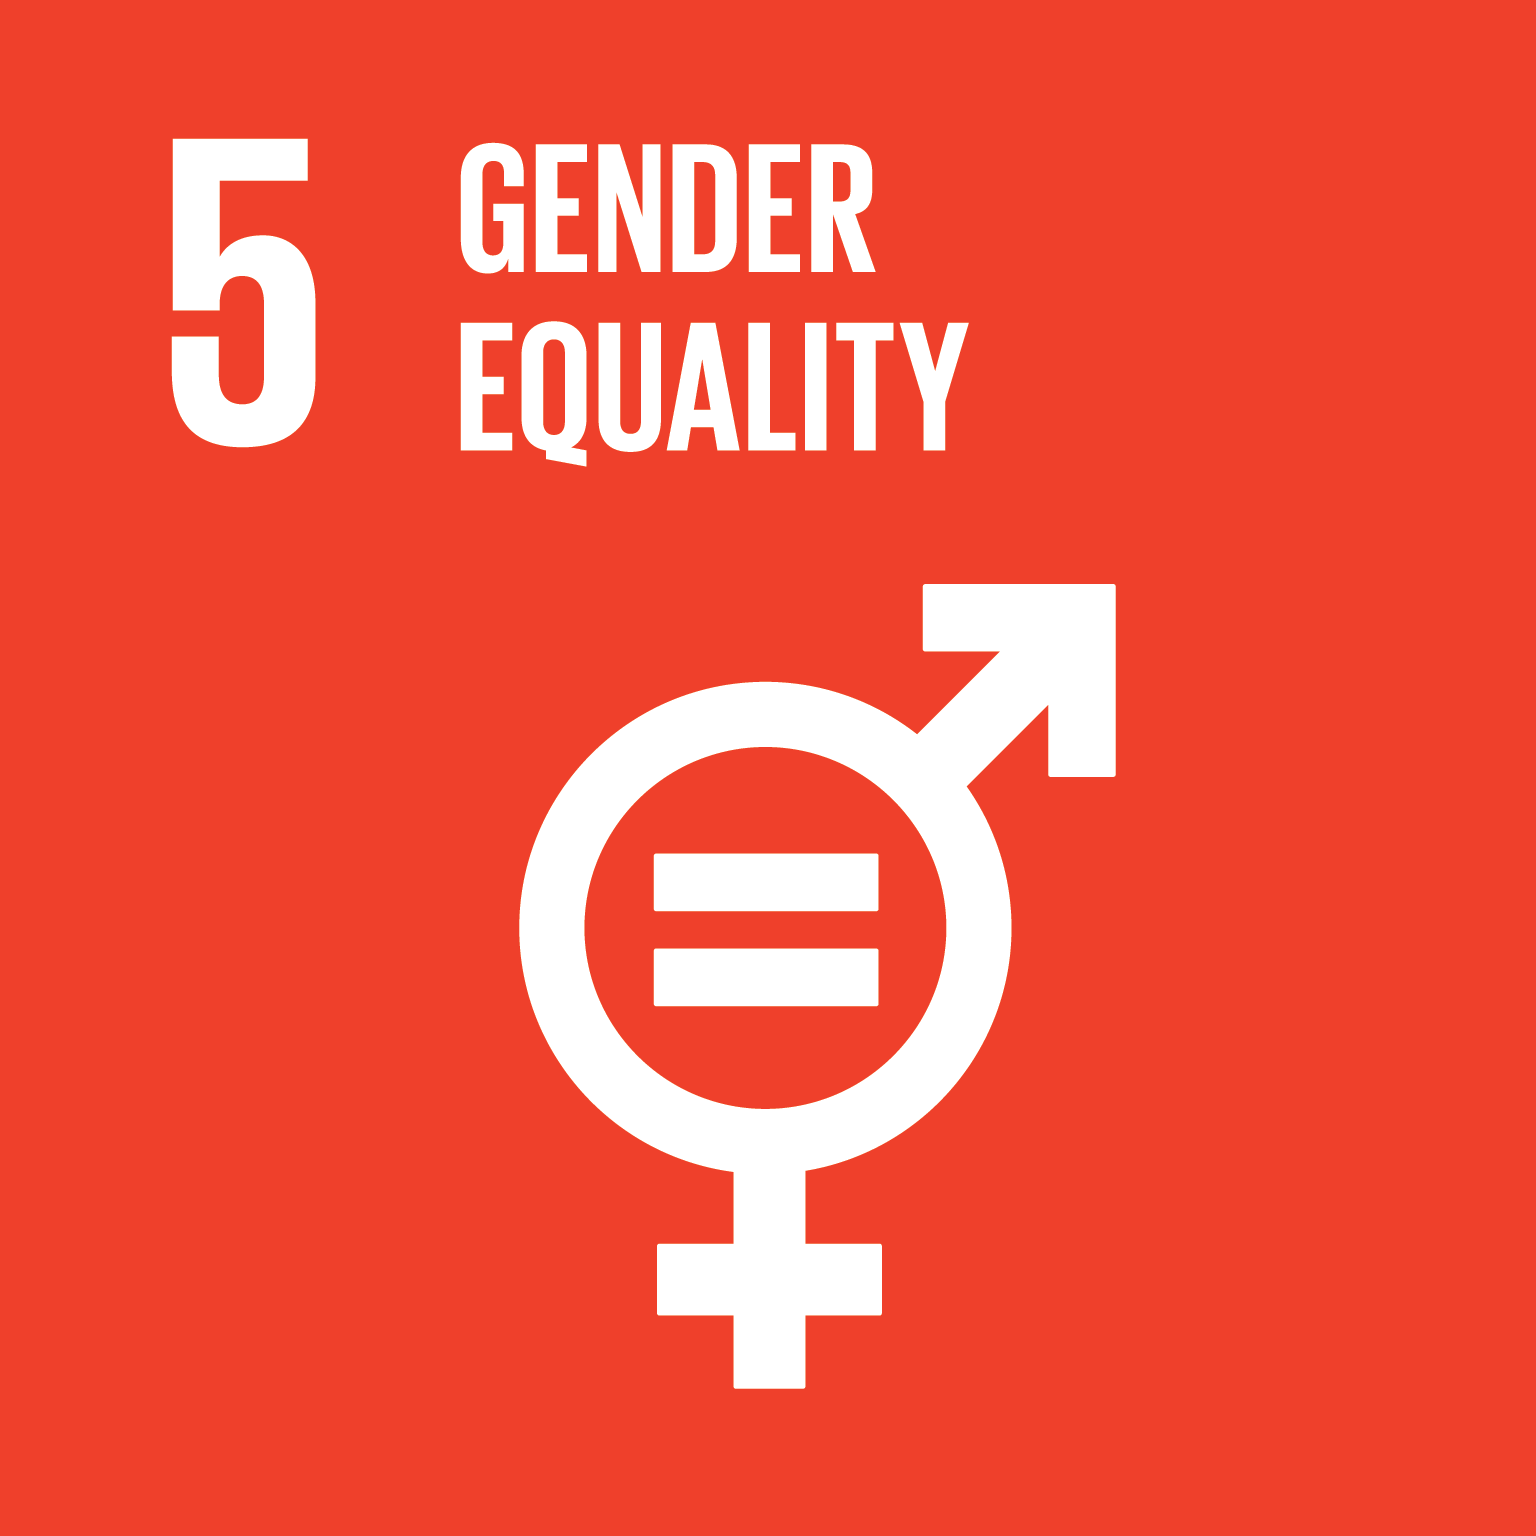 SDG Goal 5 - Gender Equality